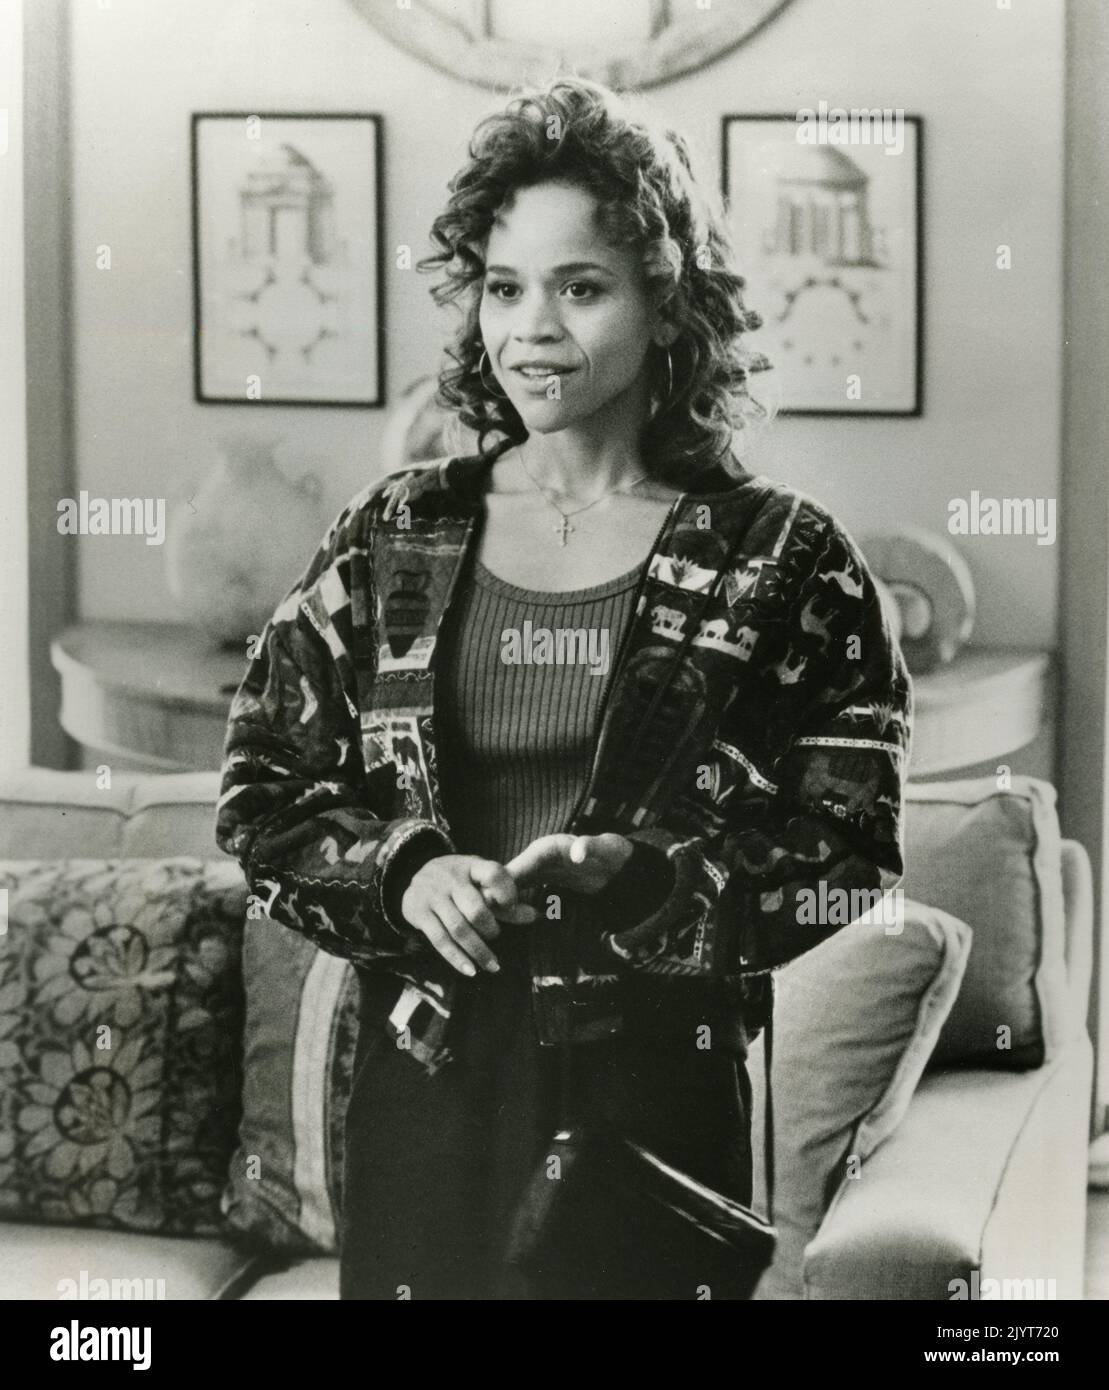 L'actrice américaine Rosie Perez dans le film Fearless, USA 1993 Banque D'Images